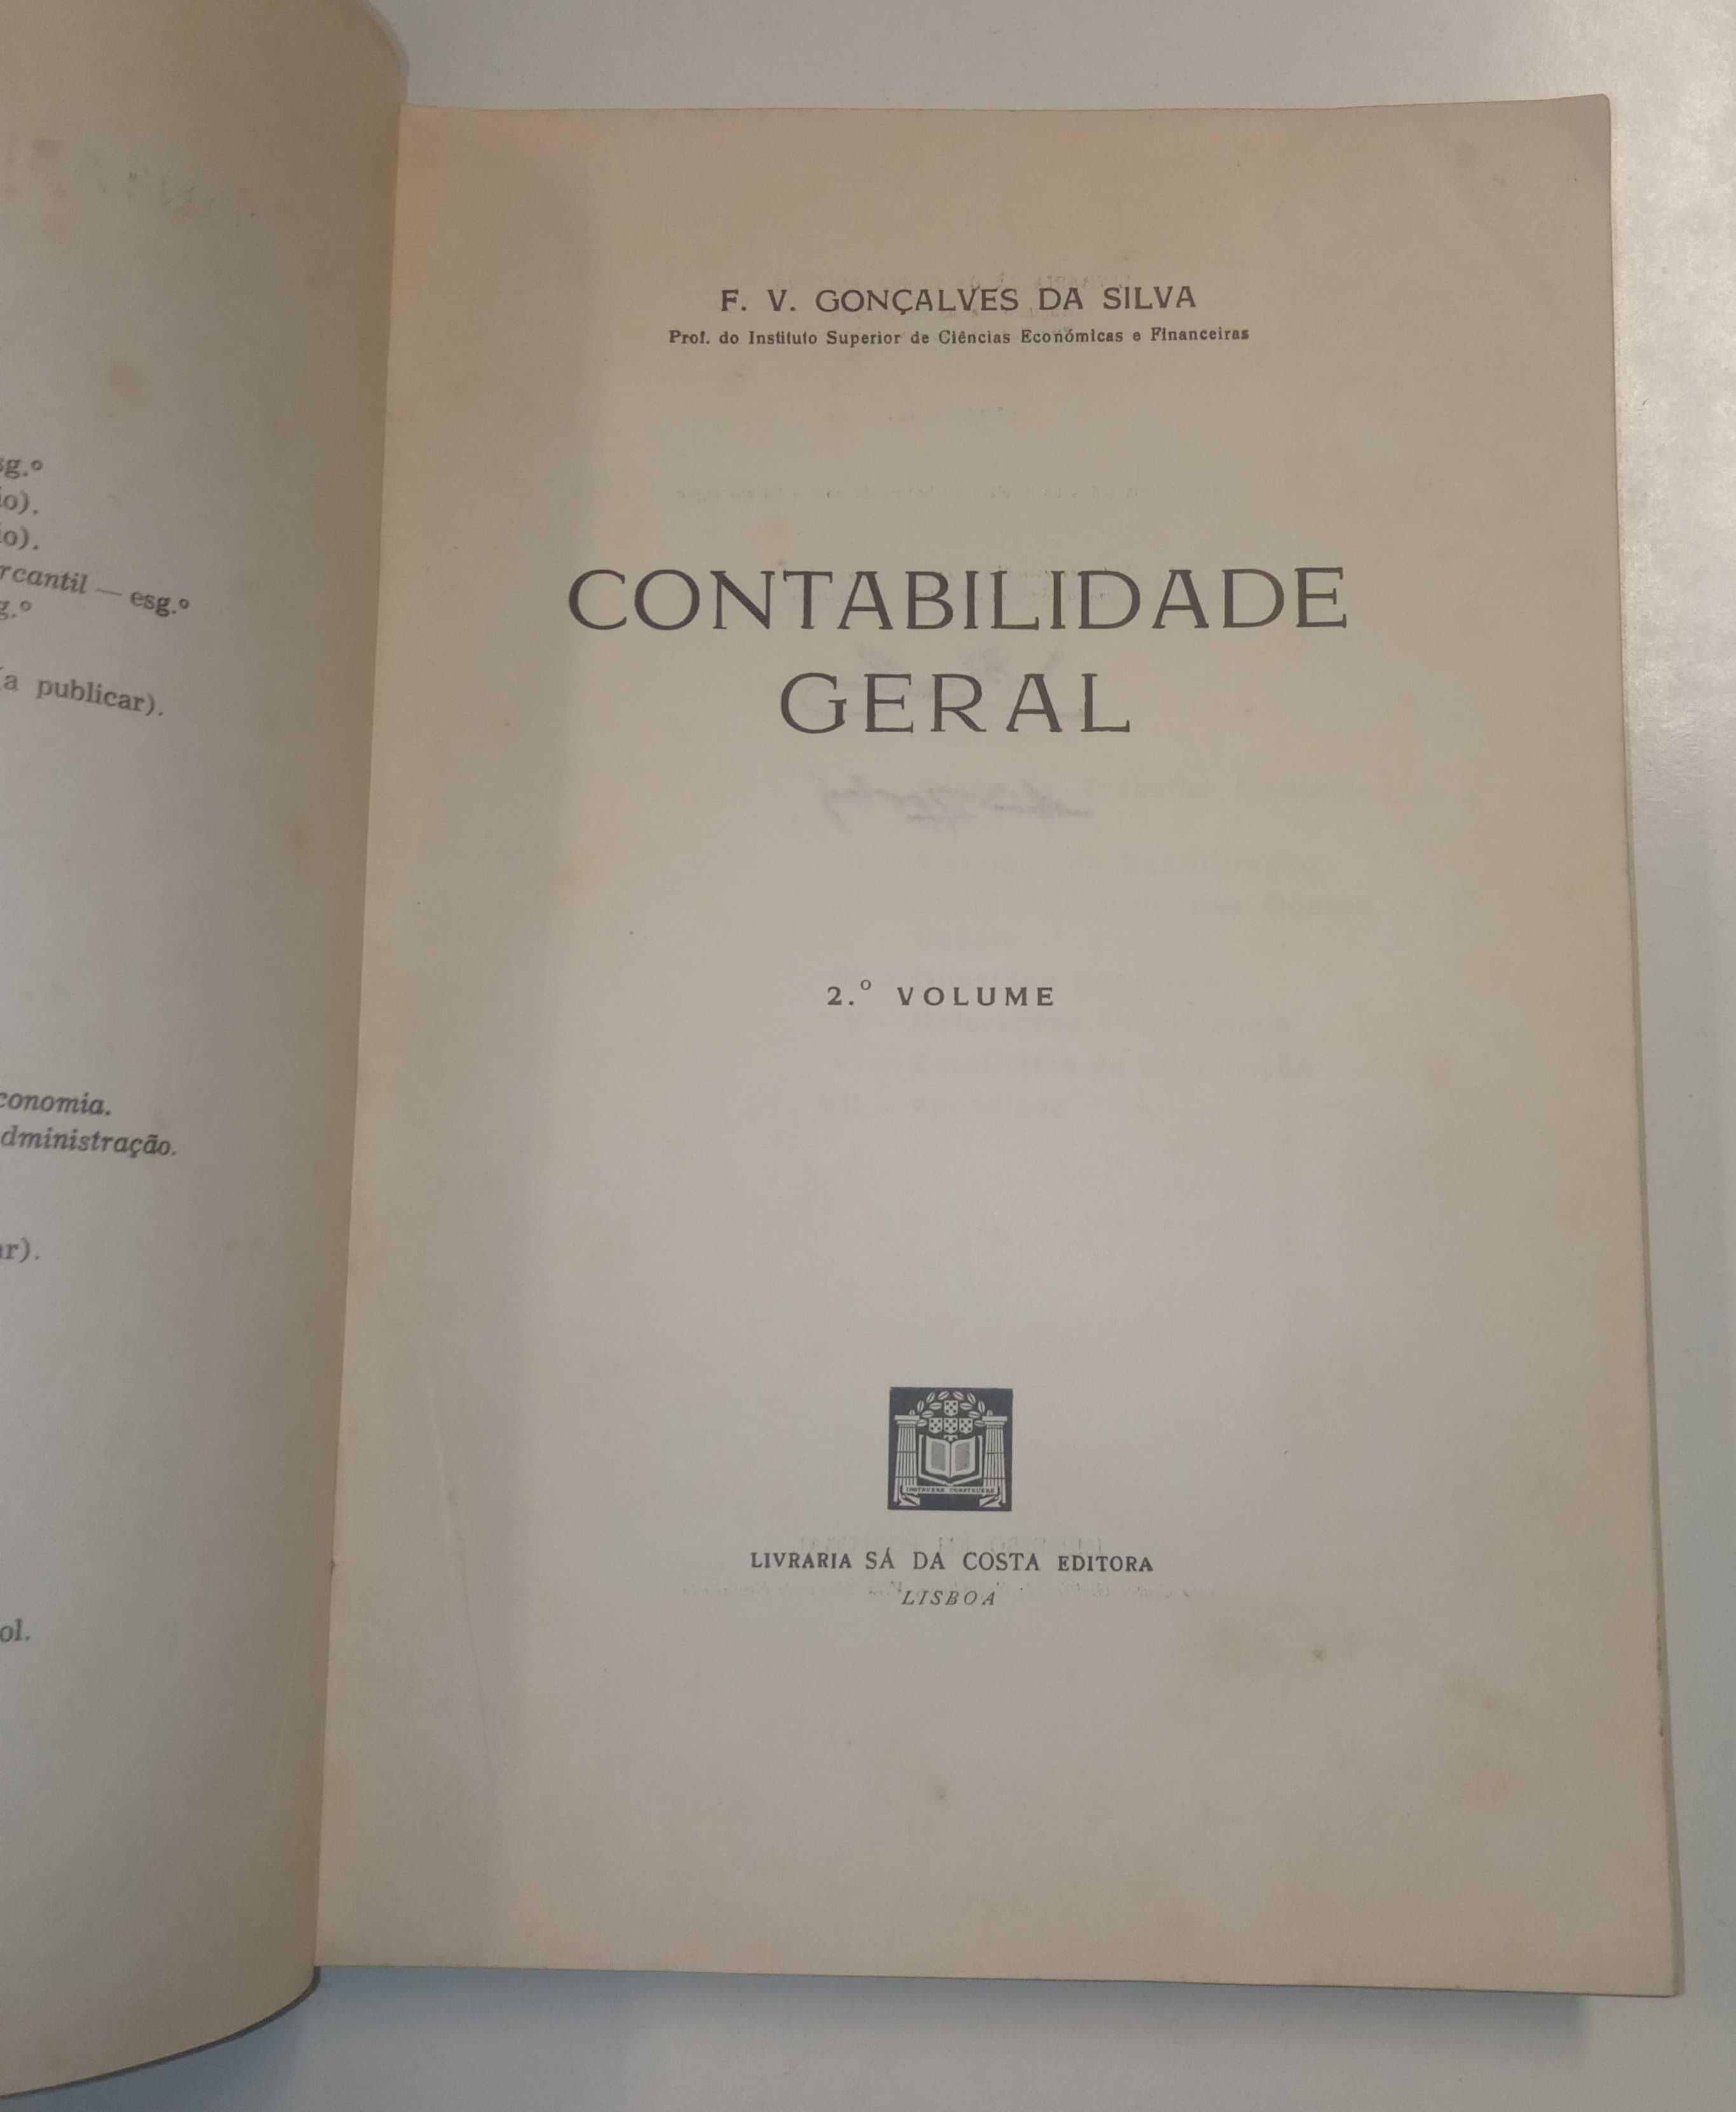 1a edição: Contabilidade Geral, de F. V. Gonçalves da Silva